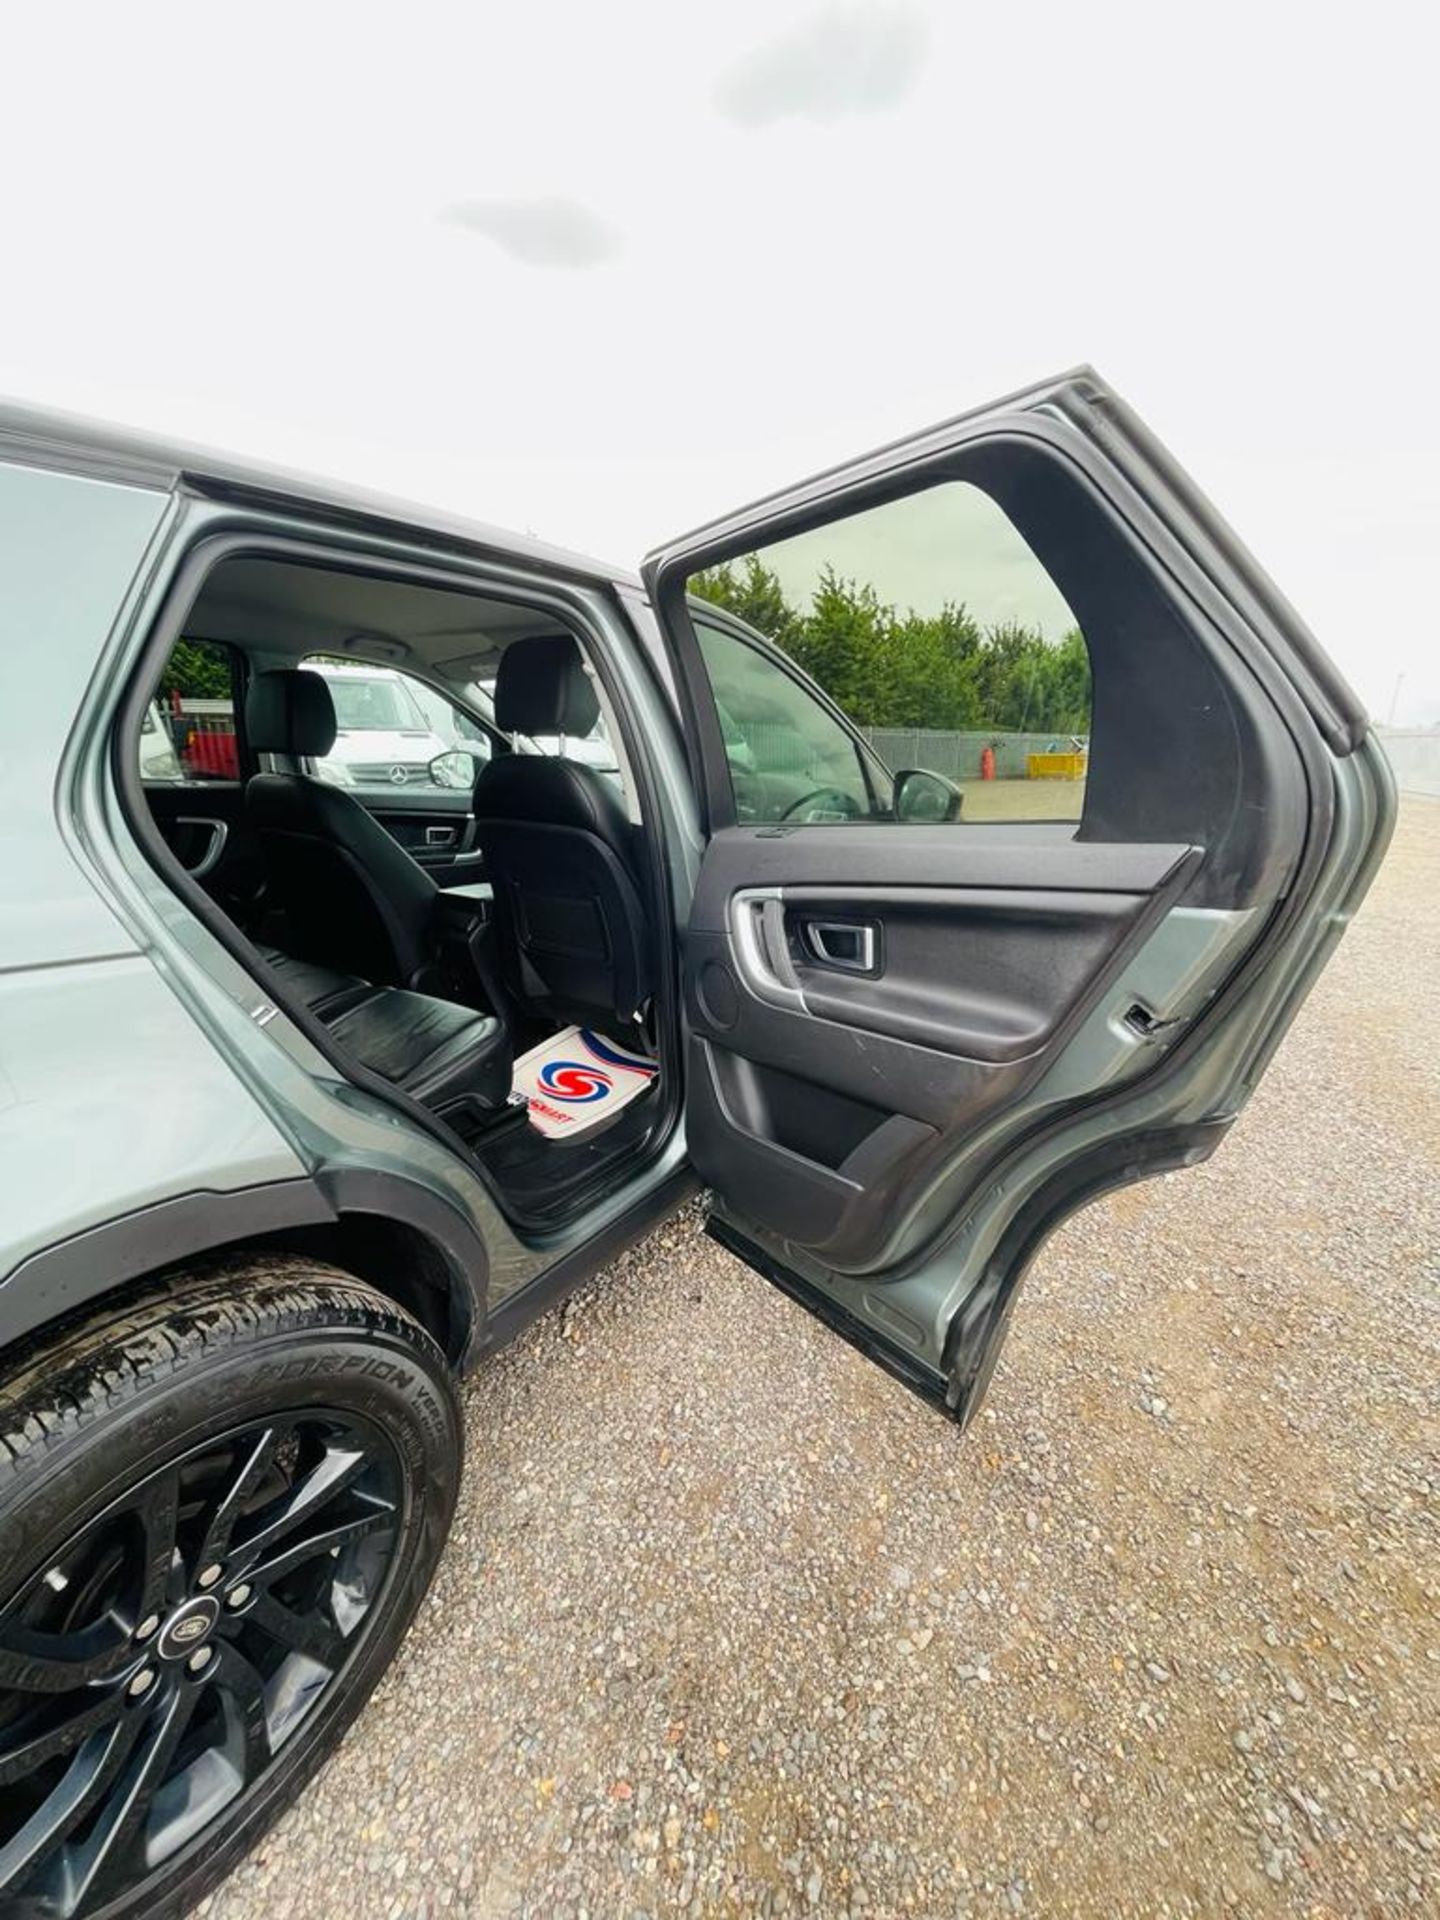 ** ON SALE ** Land Rover Discovery Sport 2.0 180 TD4 SE Tech 2018 '18 Reg' 7 Seats - Sat Nav - ULEZ - Image 23 of 30